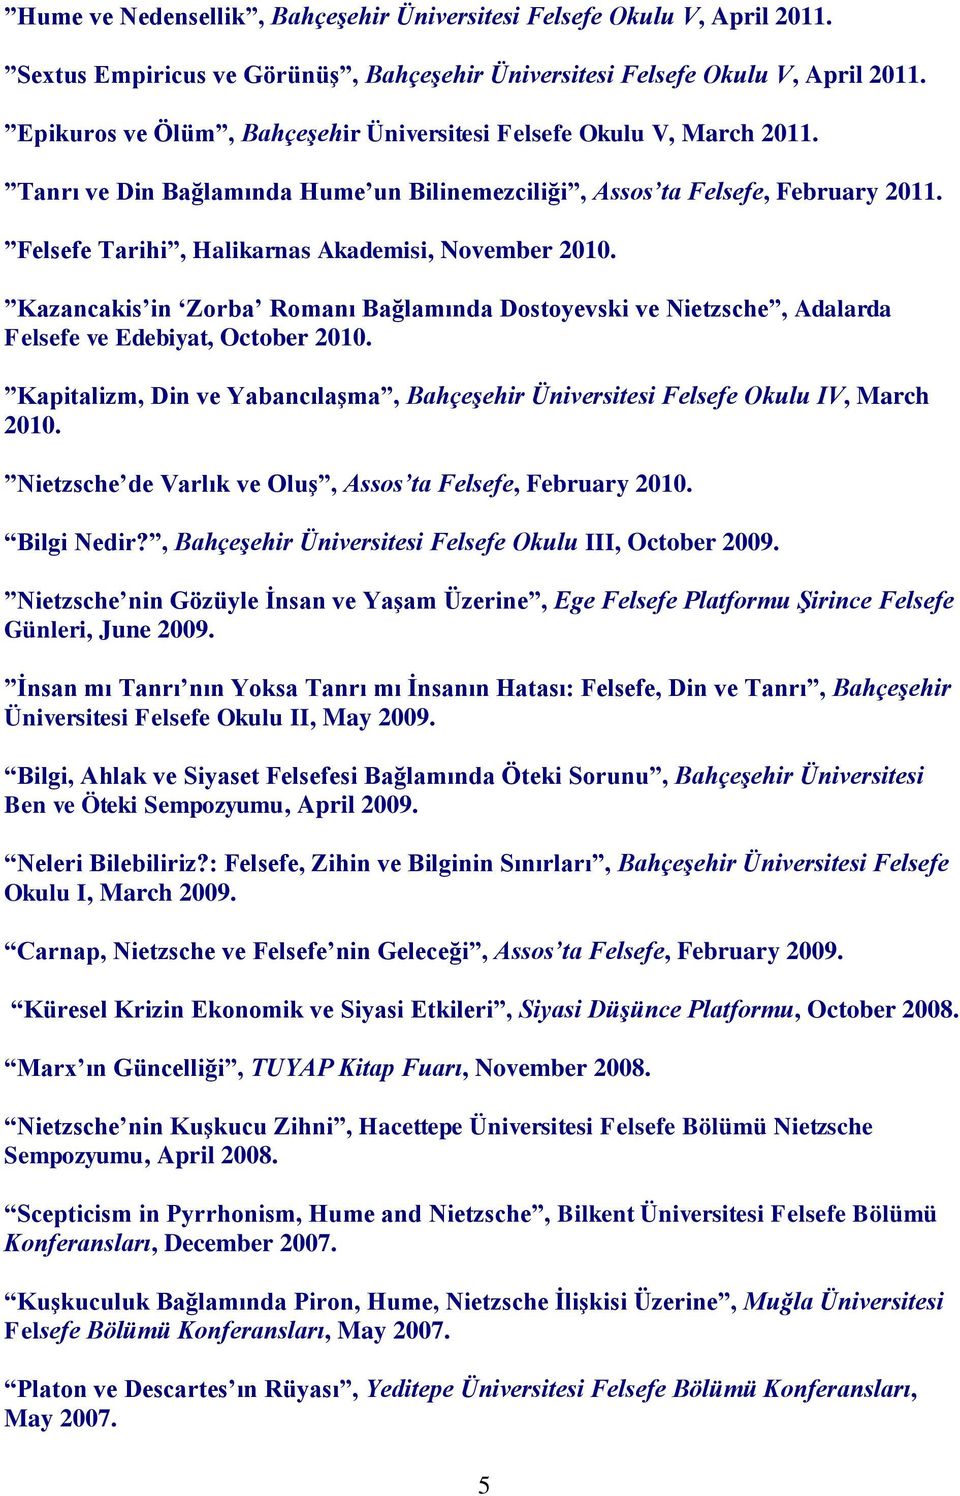 Felsefe Tarihi, Halikarnas Akademisi, November 2010. Kazancakis in Zorba Romanı Bağlamında Dostoyevski ve Nietzsche, Adalarda Felsefe ve Edebiyat, October 2010.